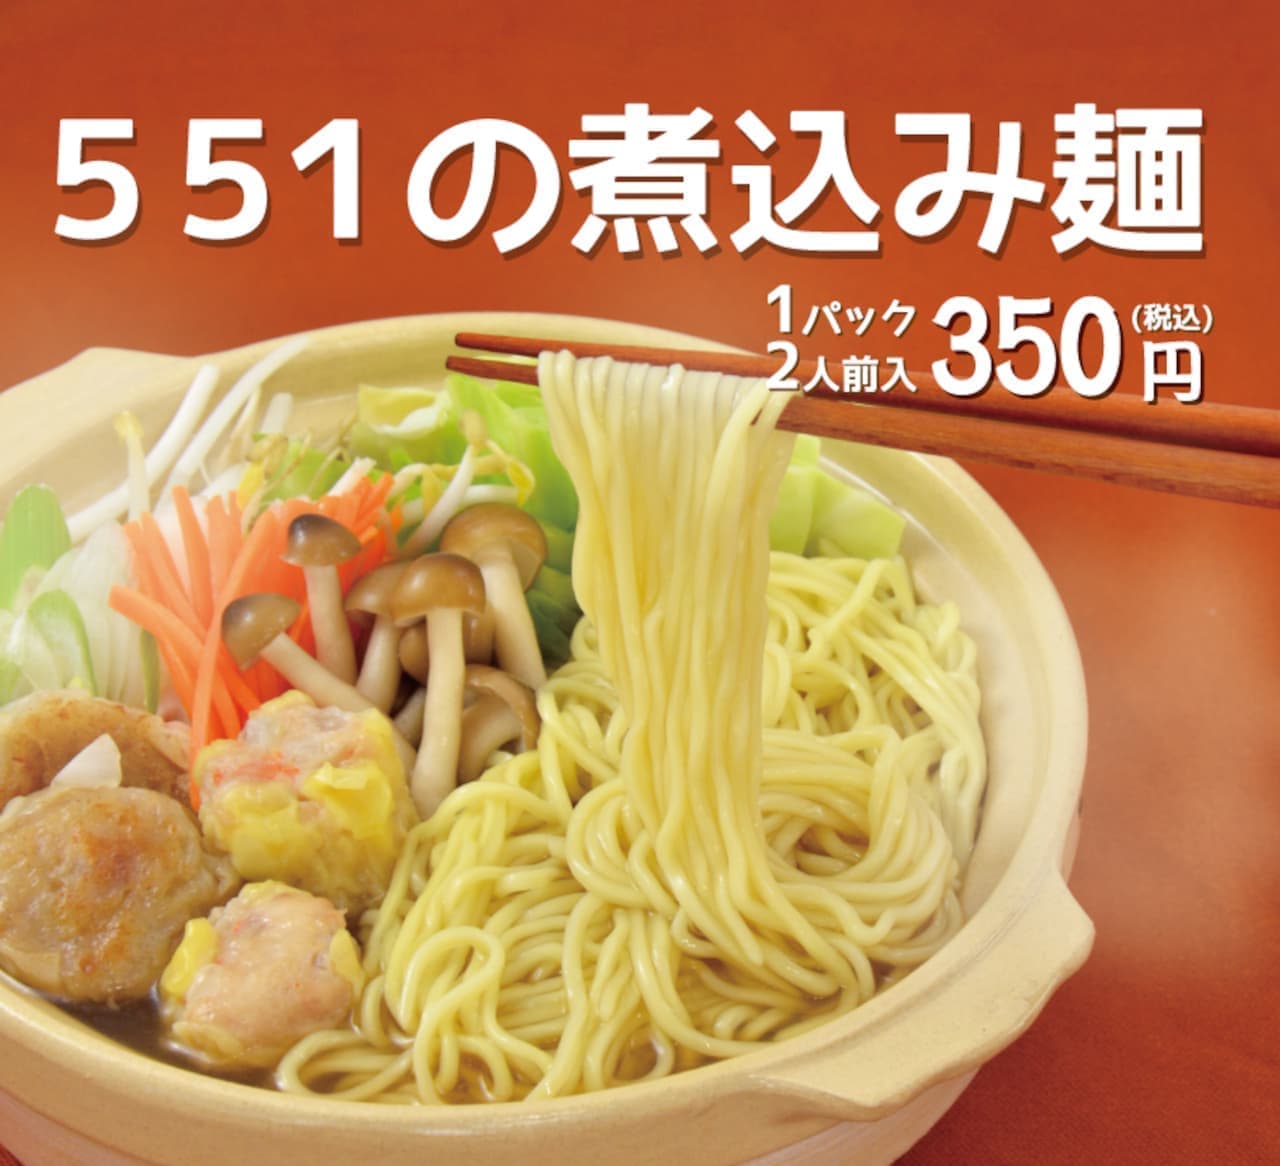 551HORAI「煮込み麺」